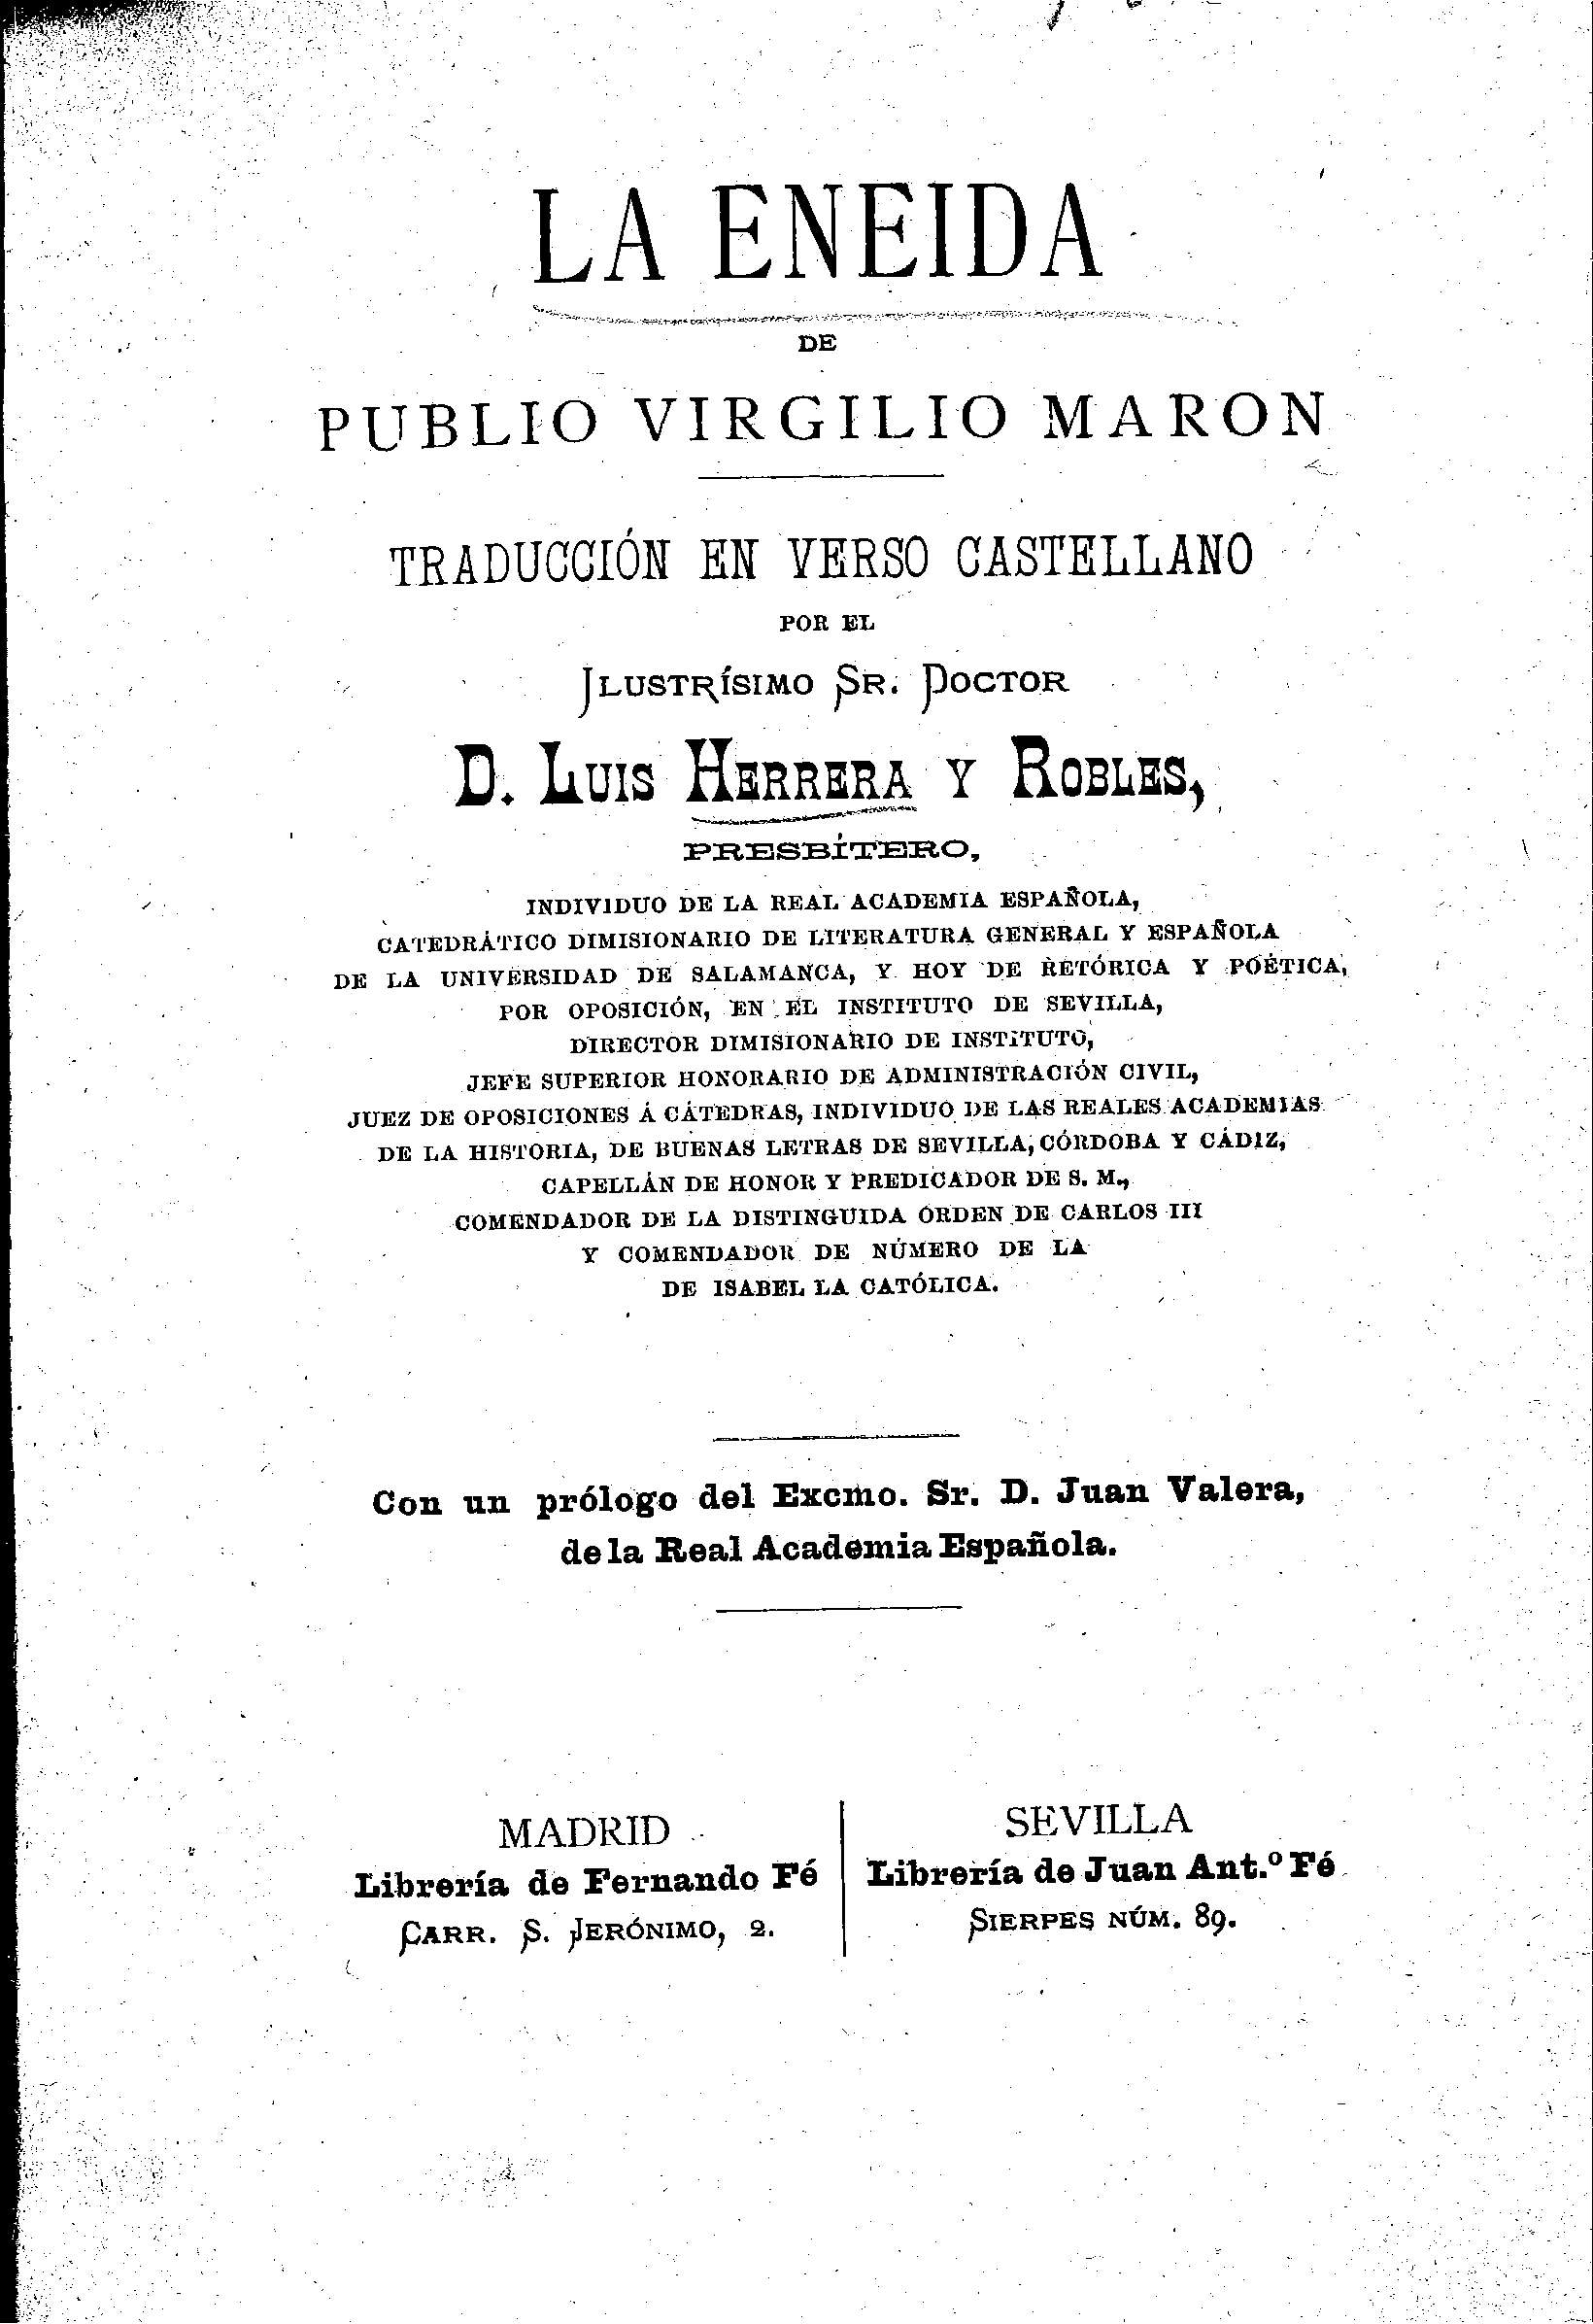 La Eneida de Publio Virgilio Marón. Traducción en verso castellano por Luis Herrera y Robles